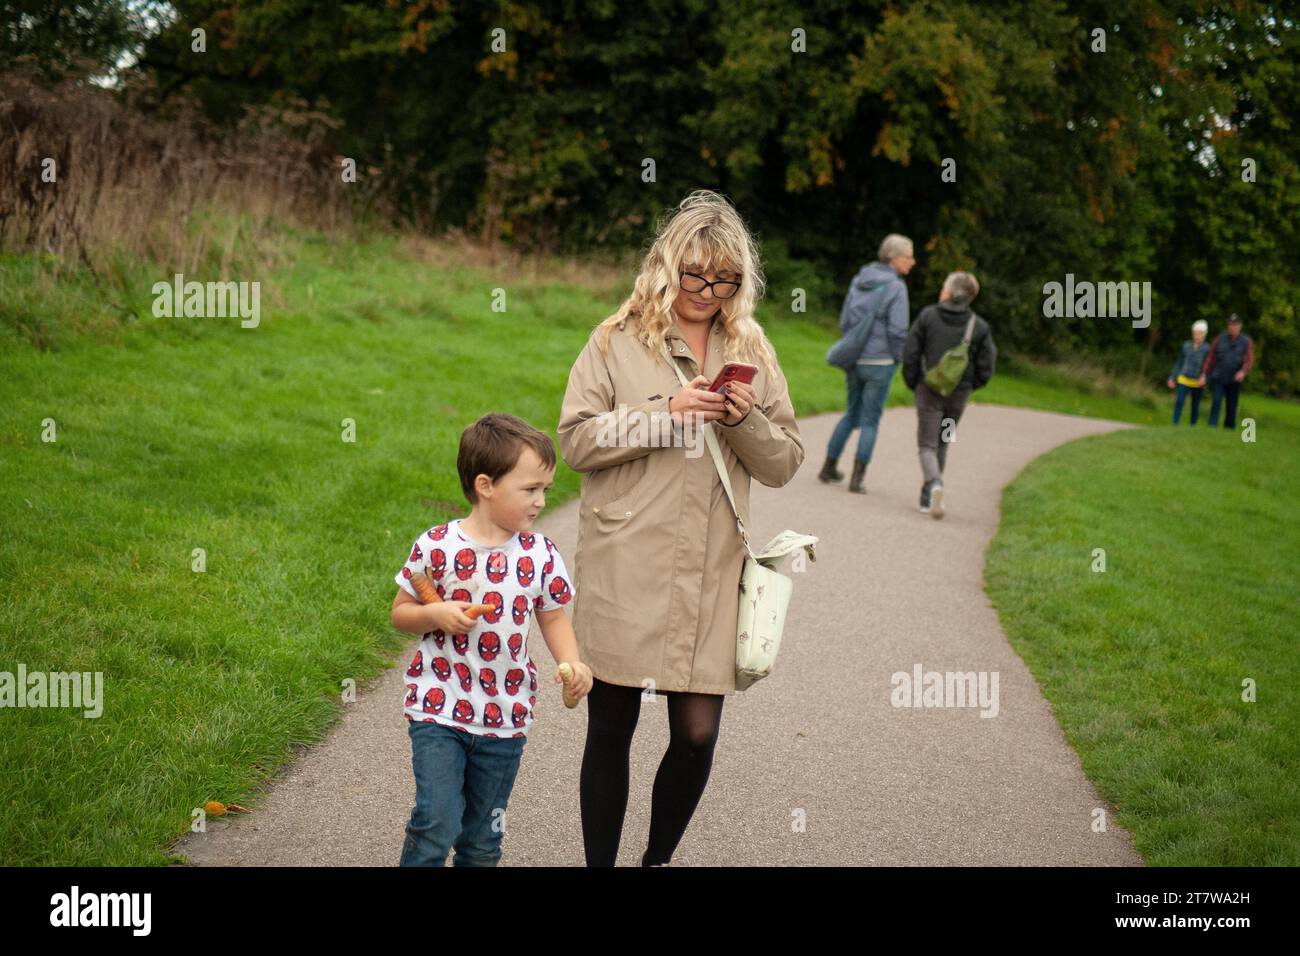 Una joven madre pasea por un parque con su pequeño, navegando por la belleza del parque mientras intenta usar su móvil. crianza contemporánea Foto de stock